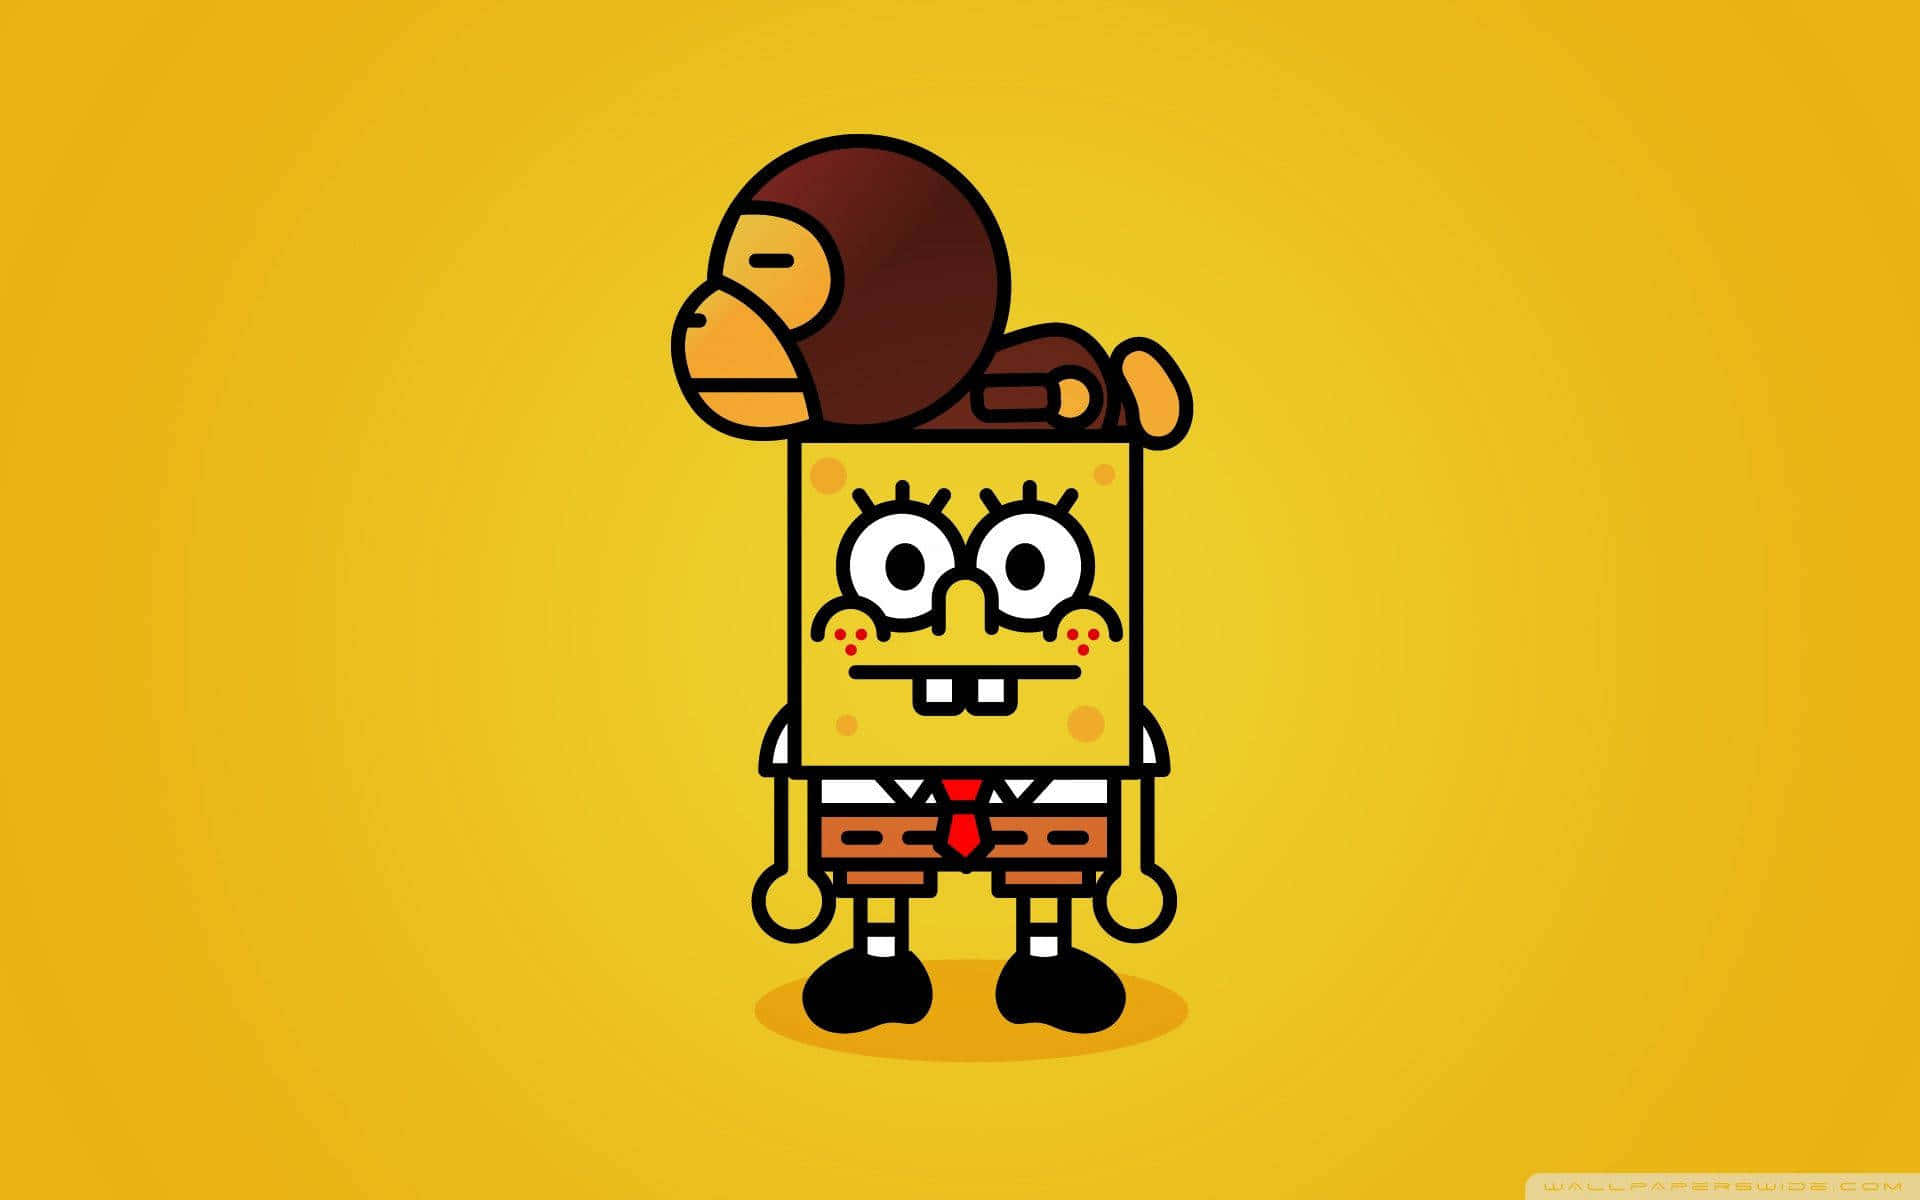 ugly spongebob characters